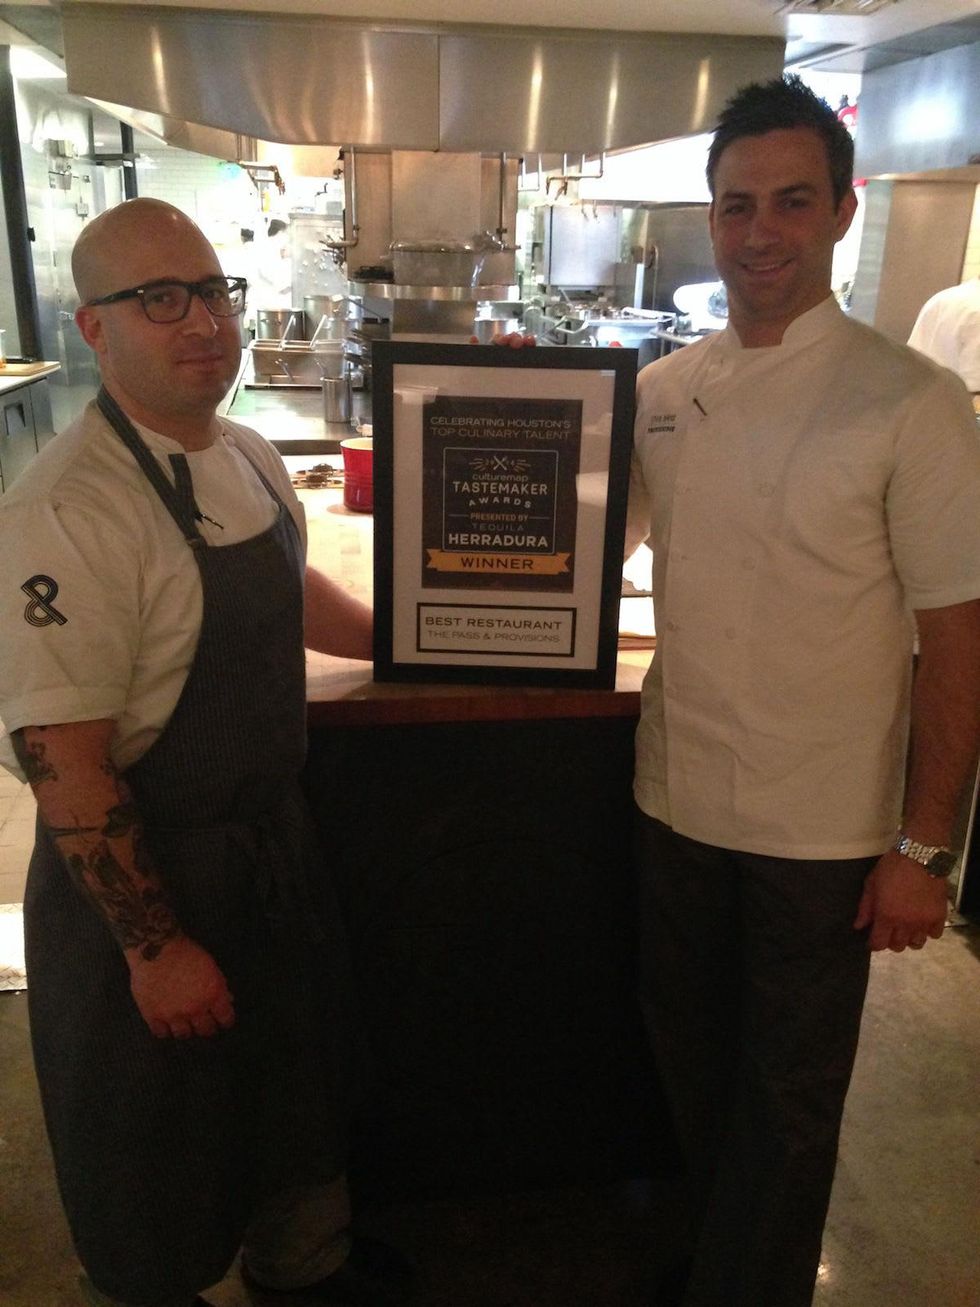 Seth Siegel-Gardner and Terrence Gallivan of The Pass & Provisions Tastemaker Best Restaurant